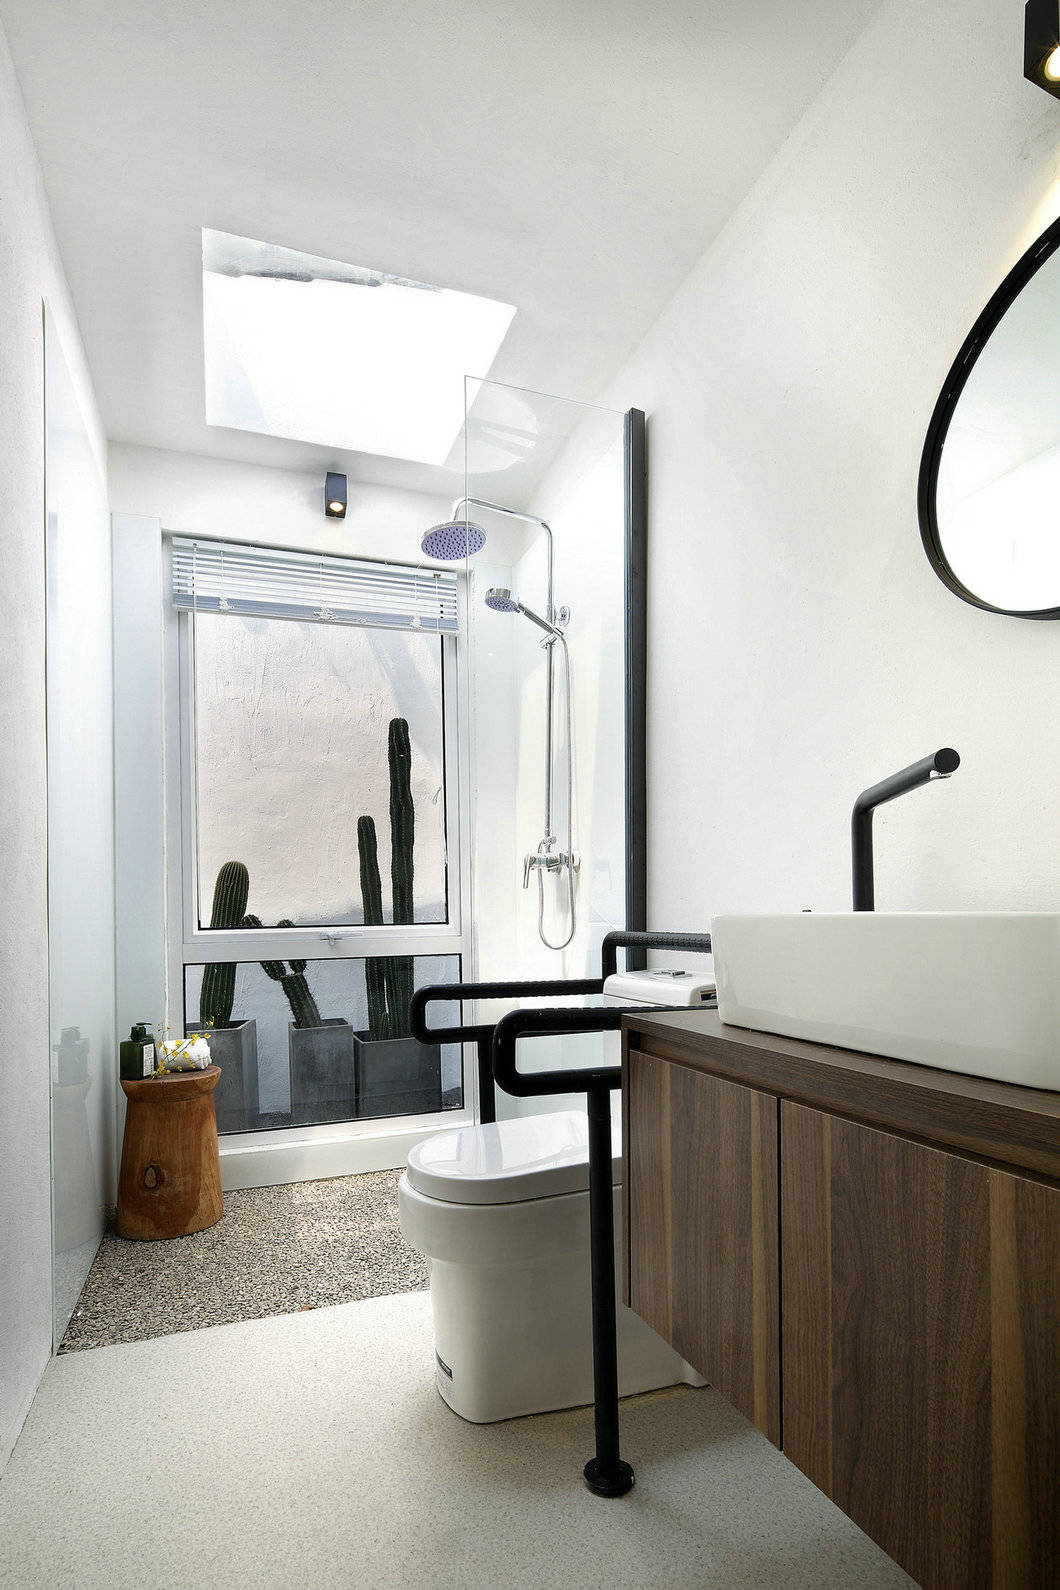 木质家具搭配白色洁具，令卫浴空间传递出明朗而优雅的生活气息。 